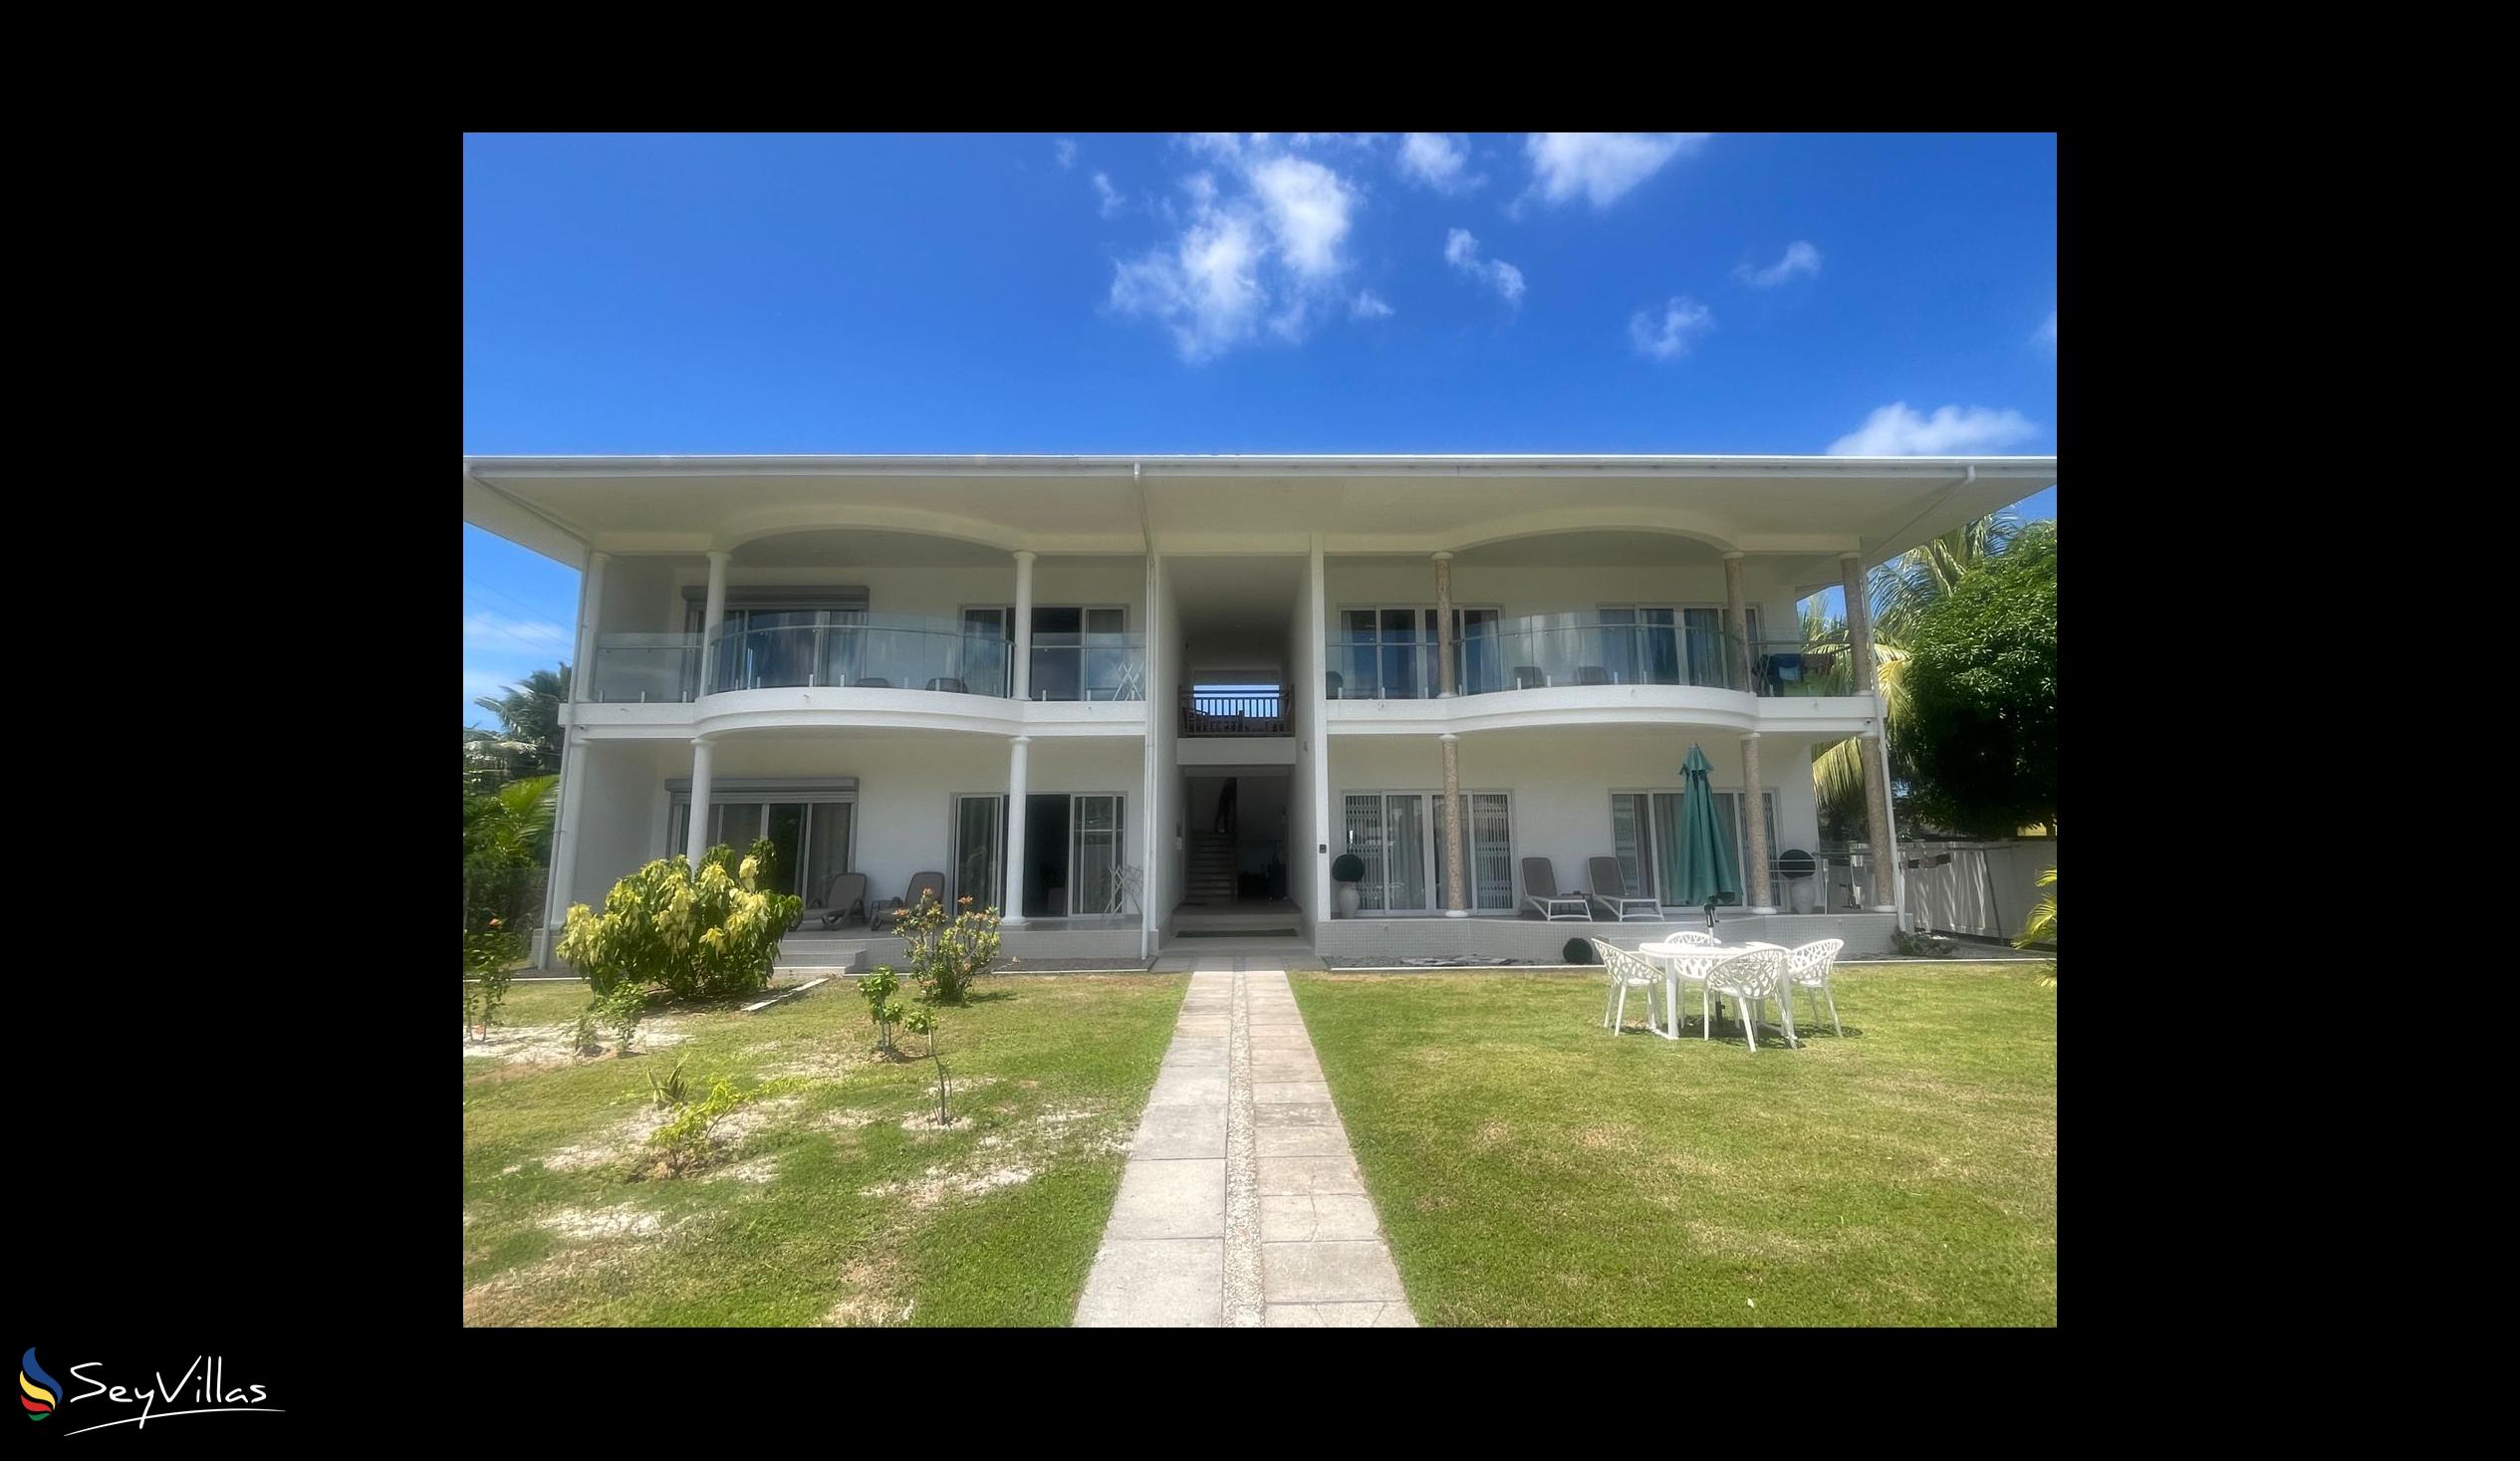 Foto 5: Tropic Villa Annex - Aussenbereich - Praslin (Seychellen)